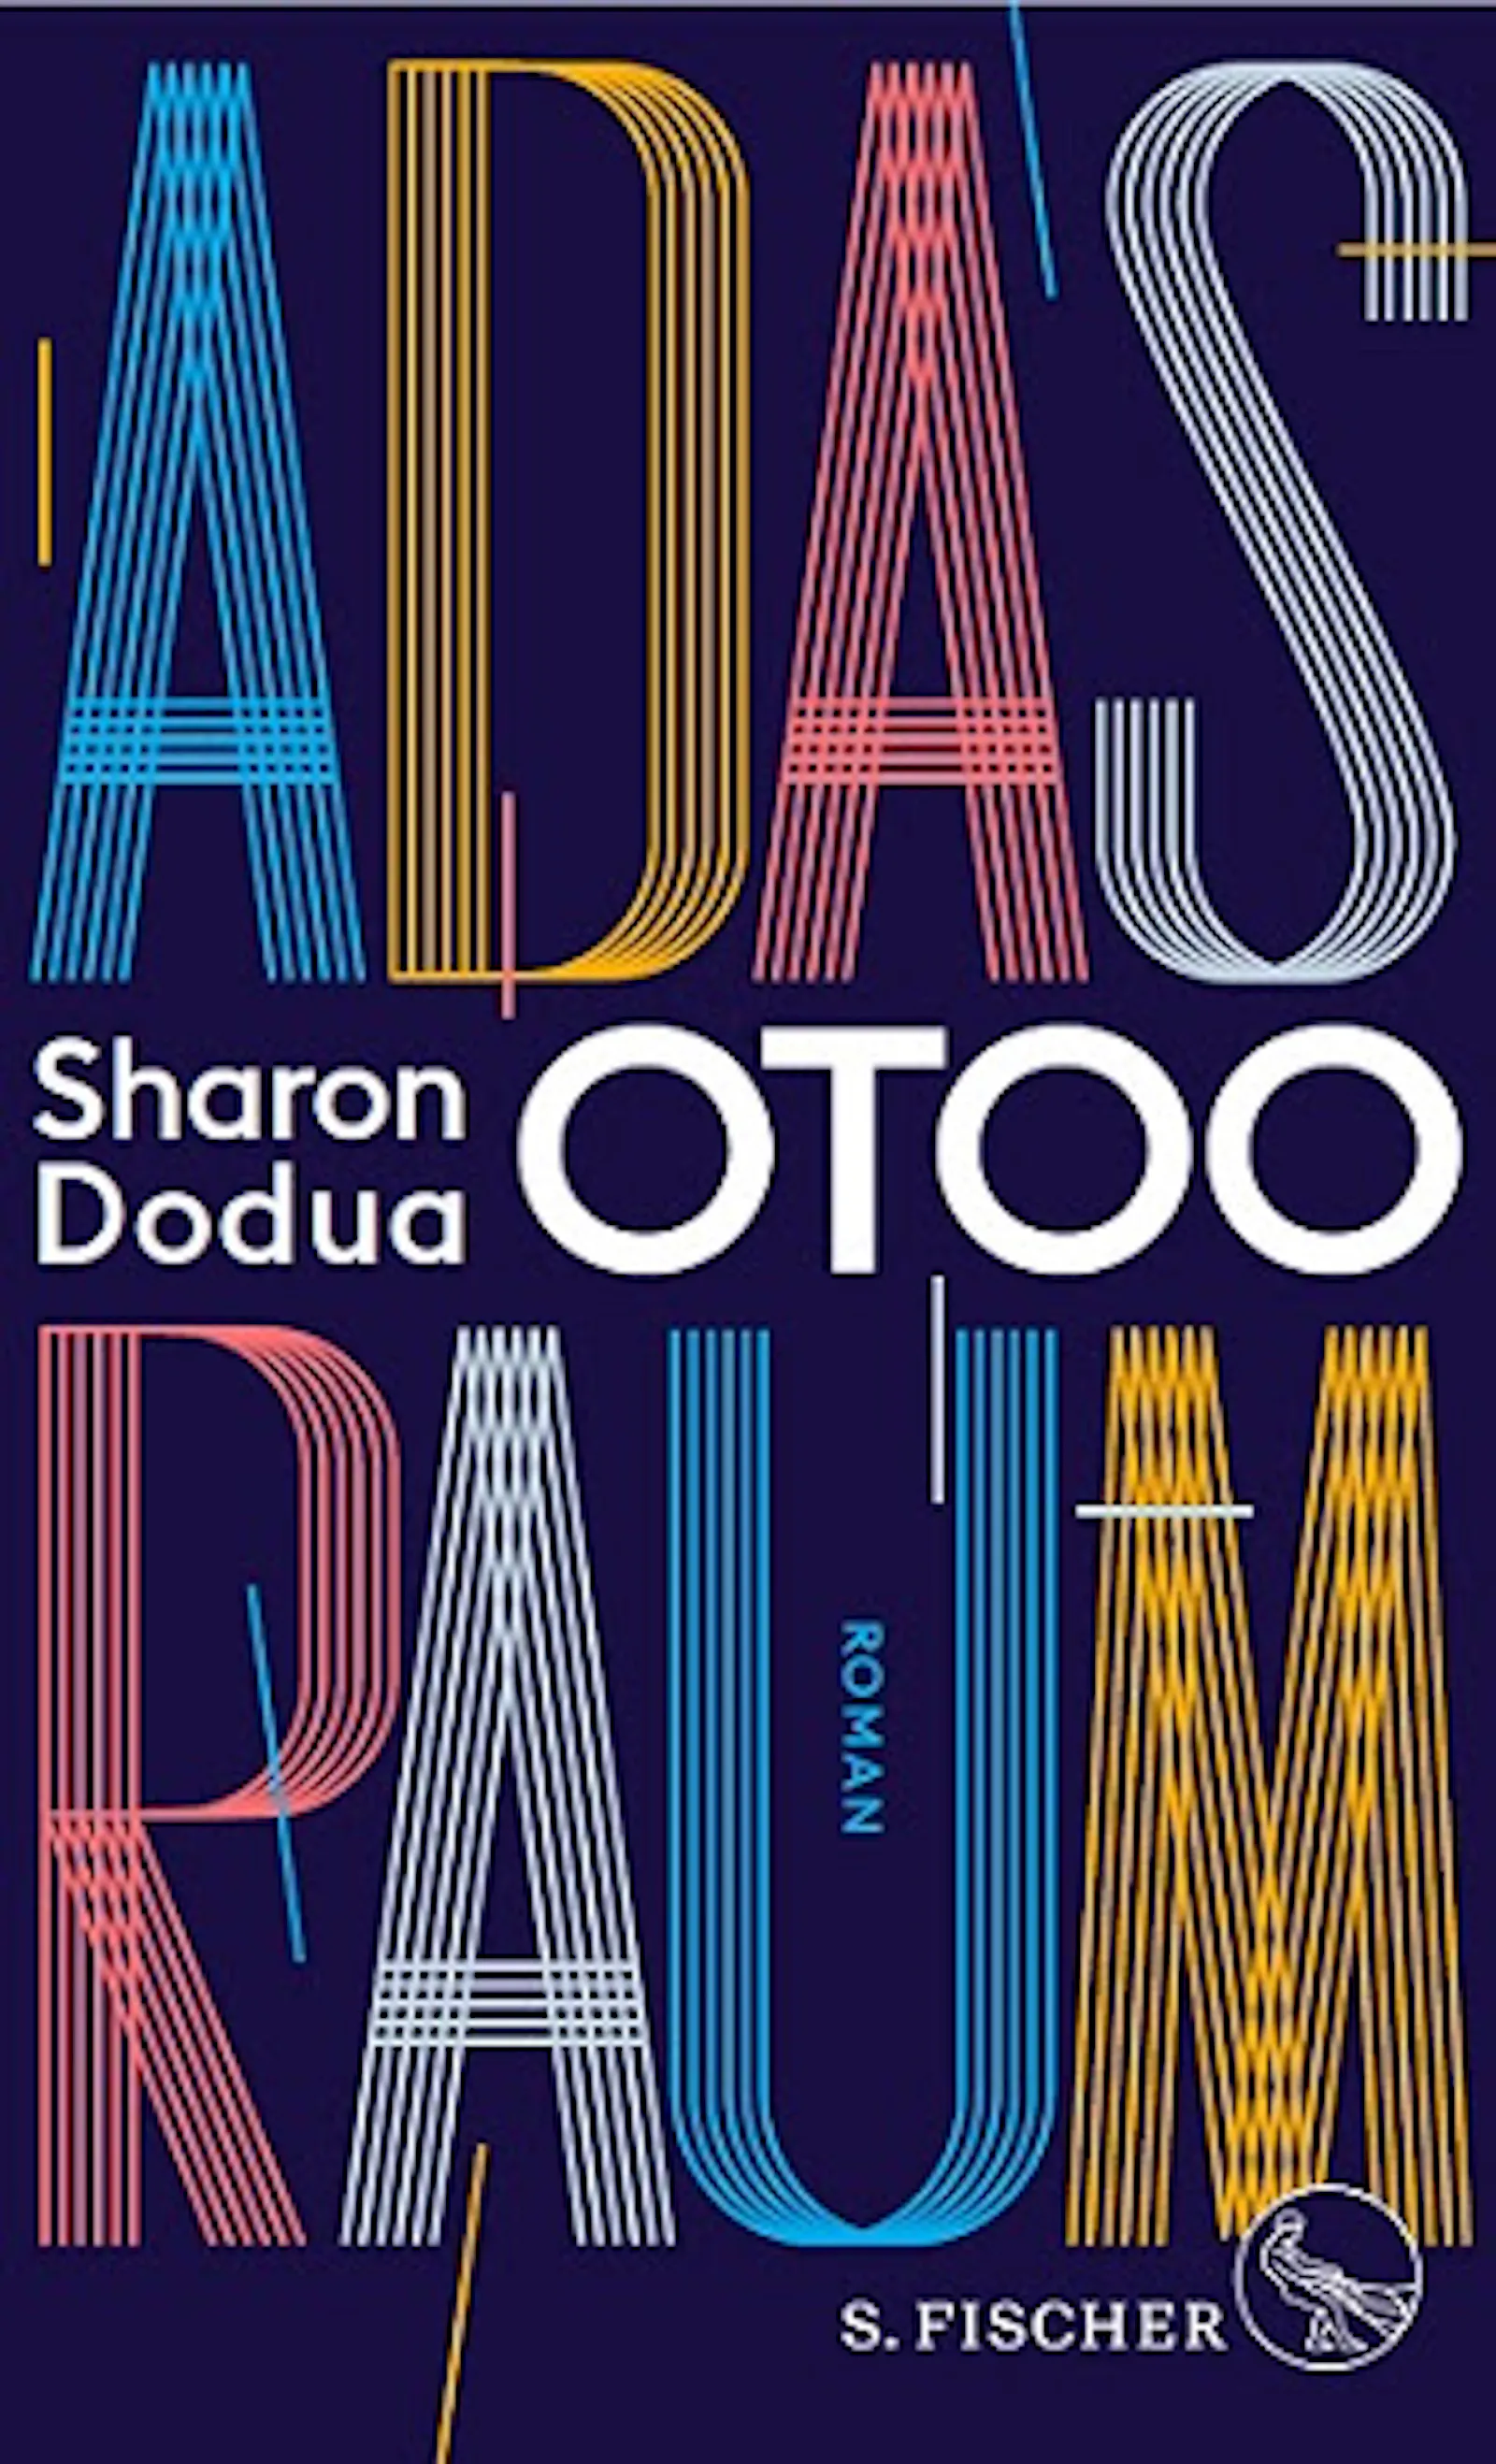 Umschlag vom Roman "Adas Raum" von Sharon Dodua Otoo